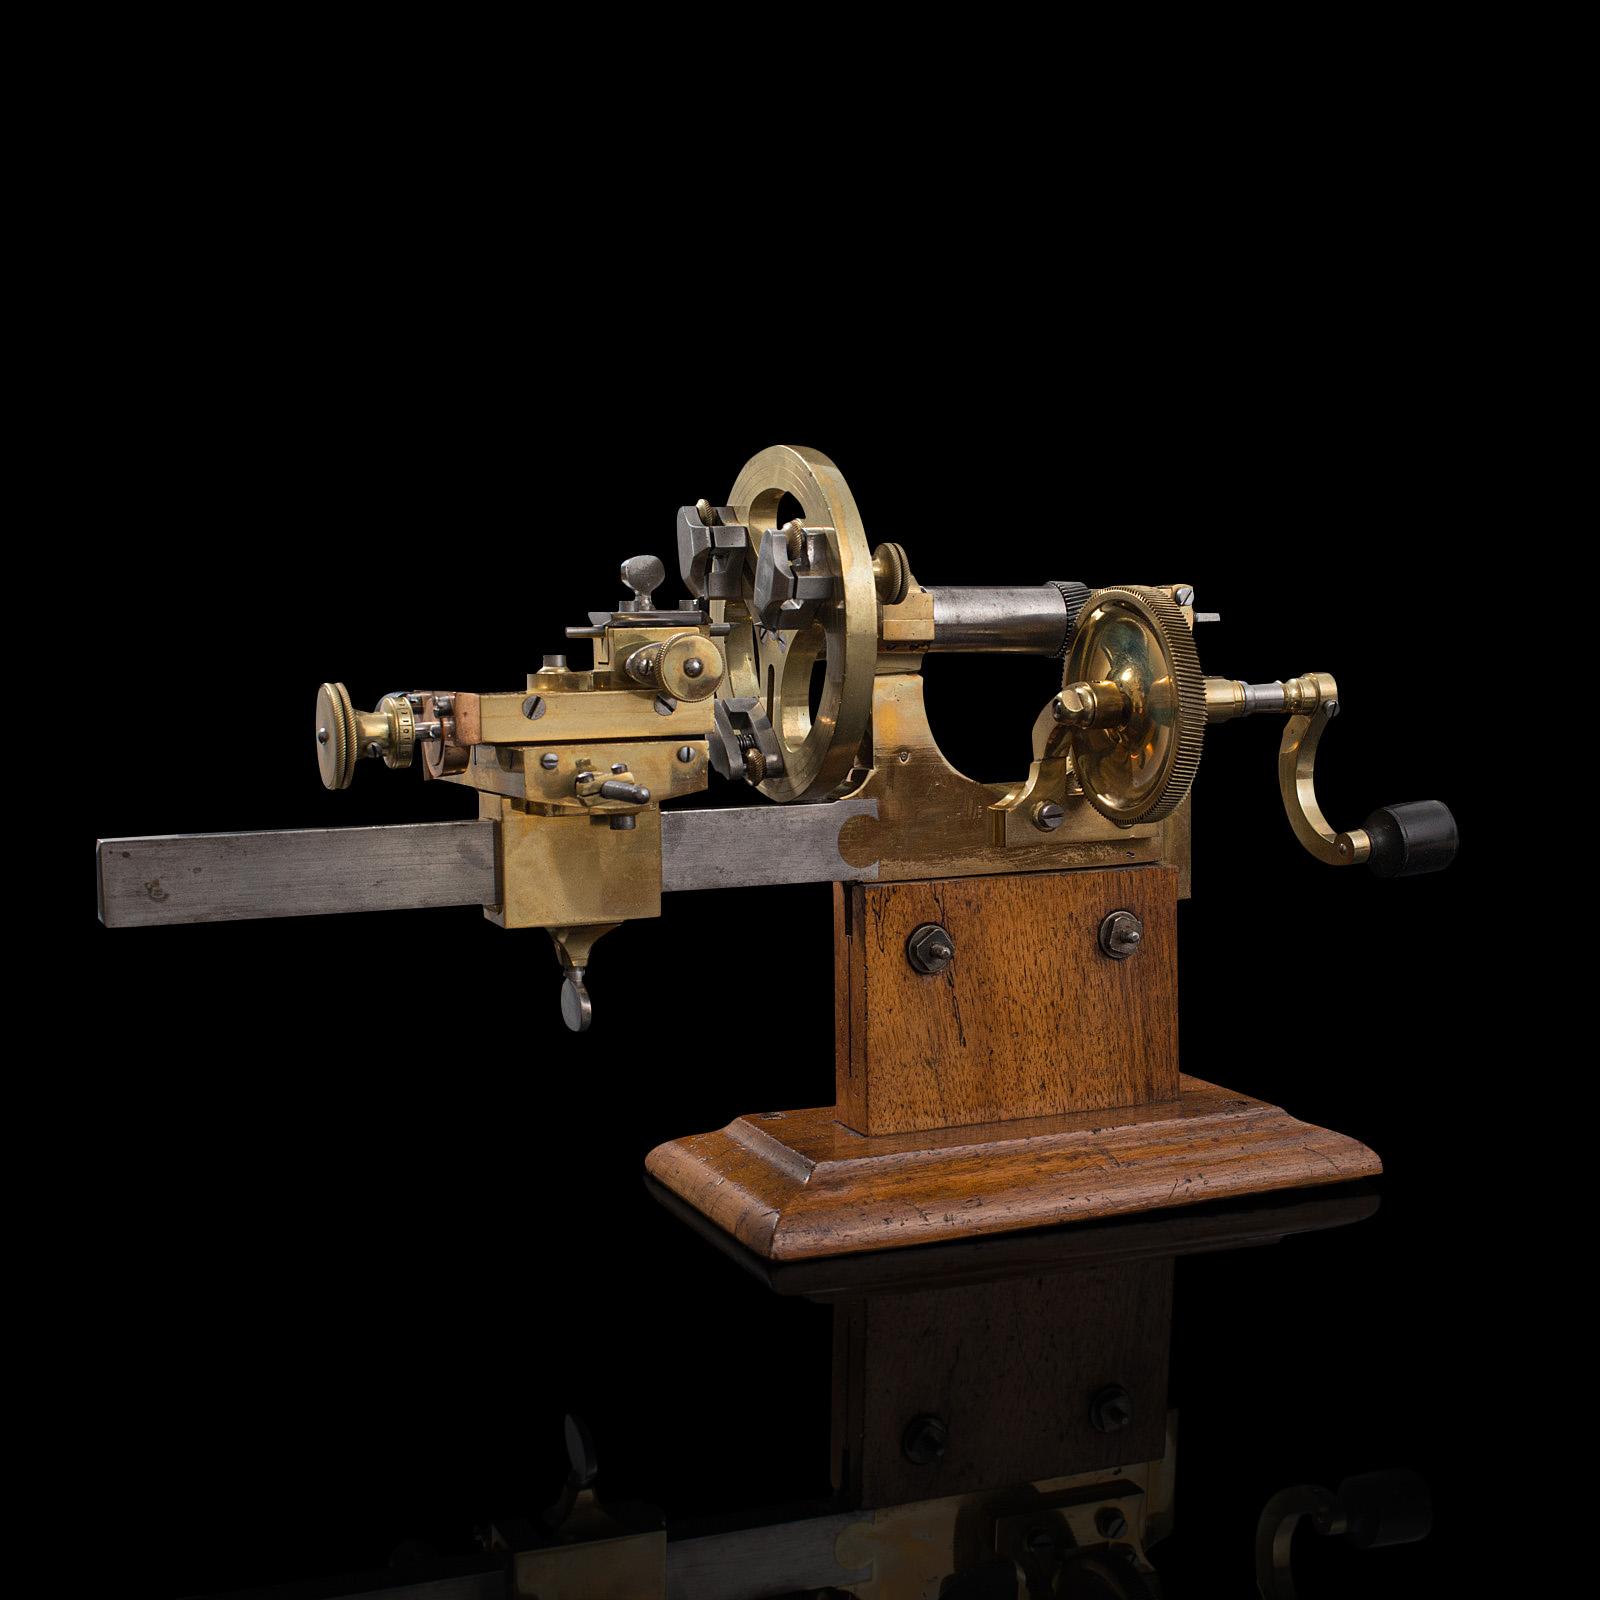 Dies ist eine fantastische antike Uhrmacher-Drehbank. Schweizer Präzisionsinstrument aus Messing, Kupfer und rostfreiem Stahl, datiert auf das späte 19. Jahrhundert, um 1900.

Eine exquisite und seltene antike Drehbank mit hochwertigem Zubehör und